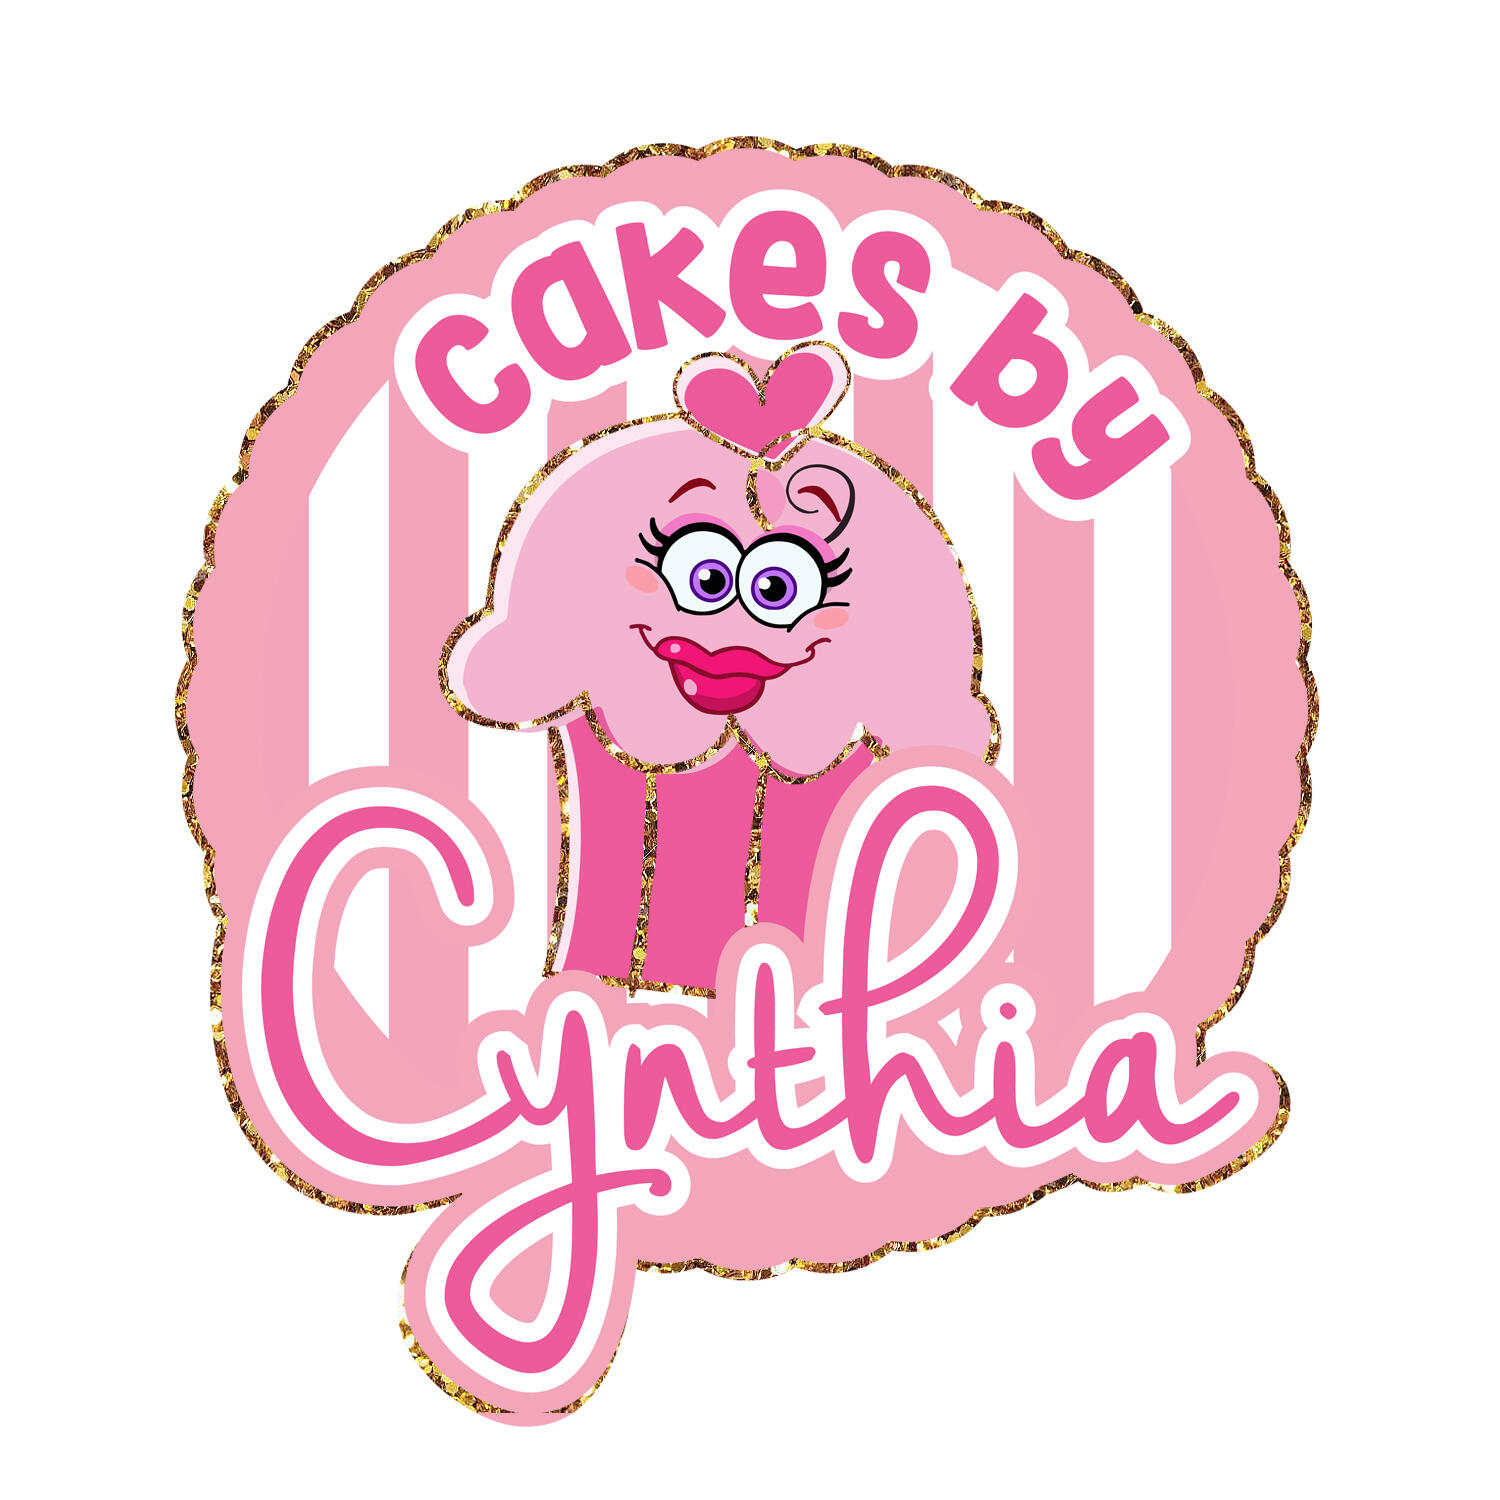 Cakes by Cynthia logo